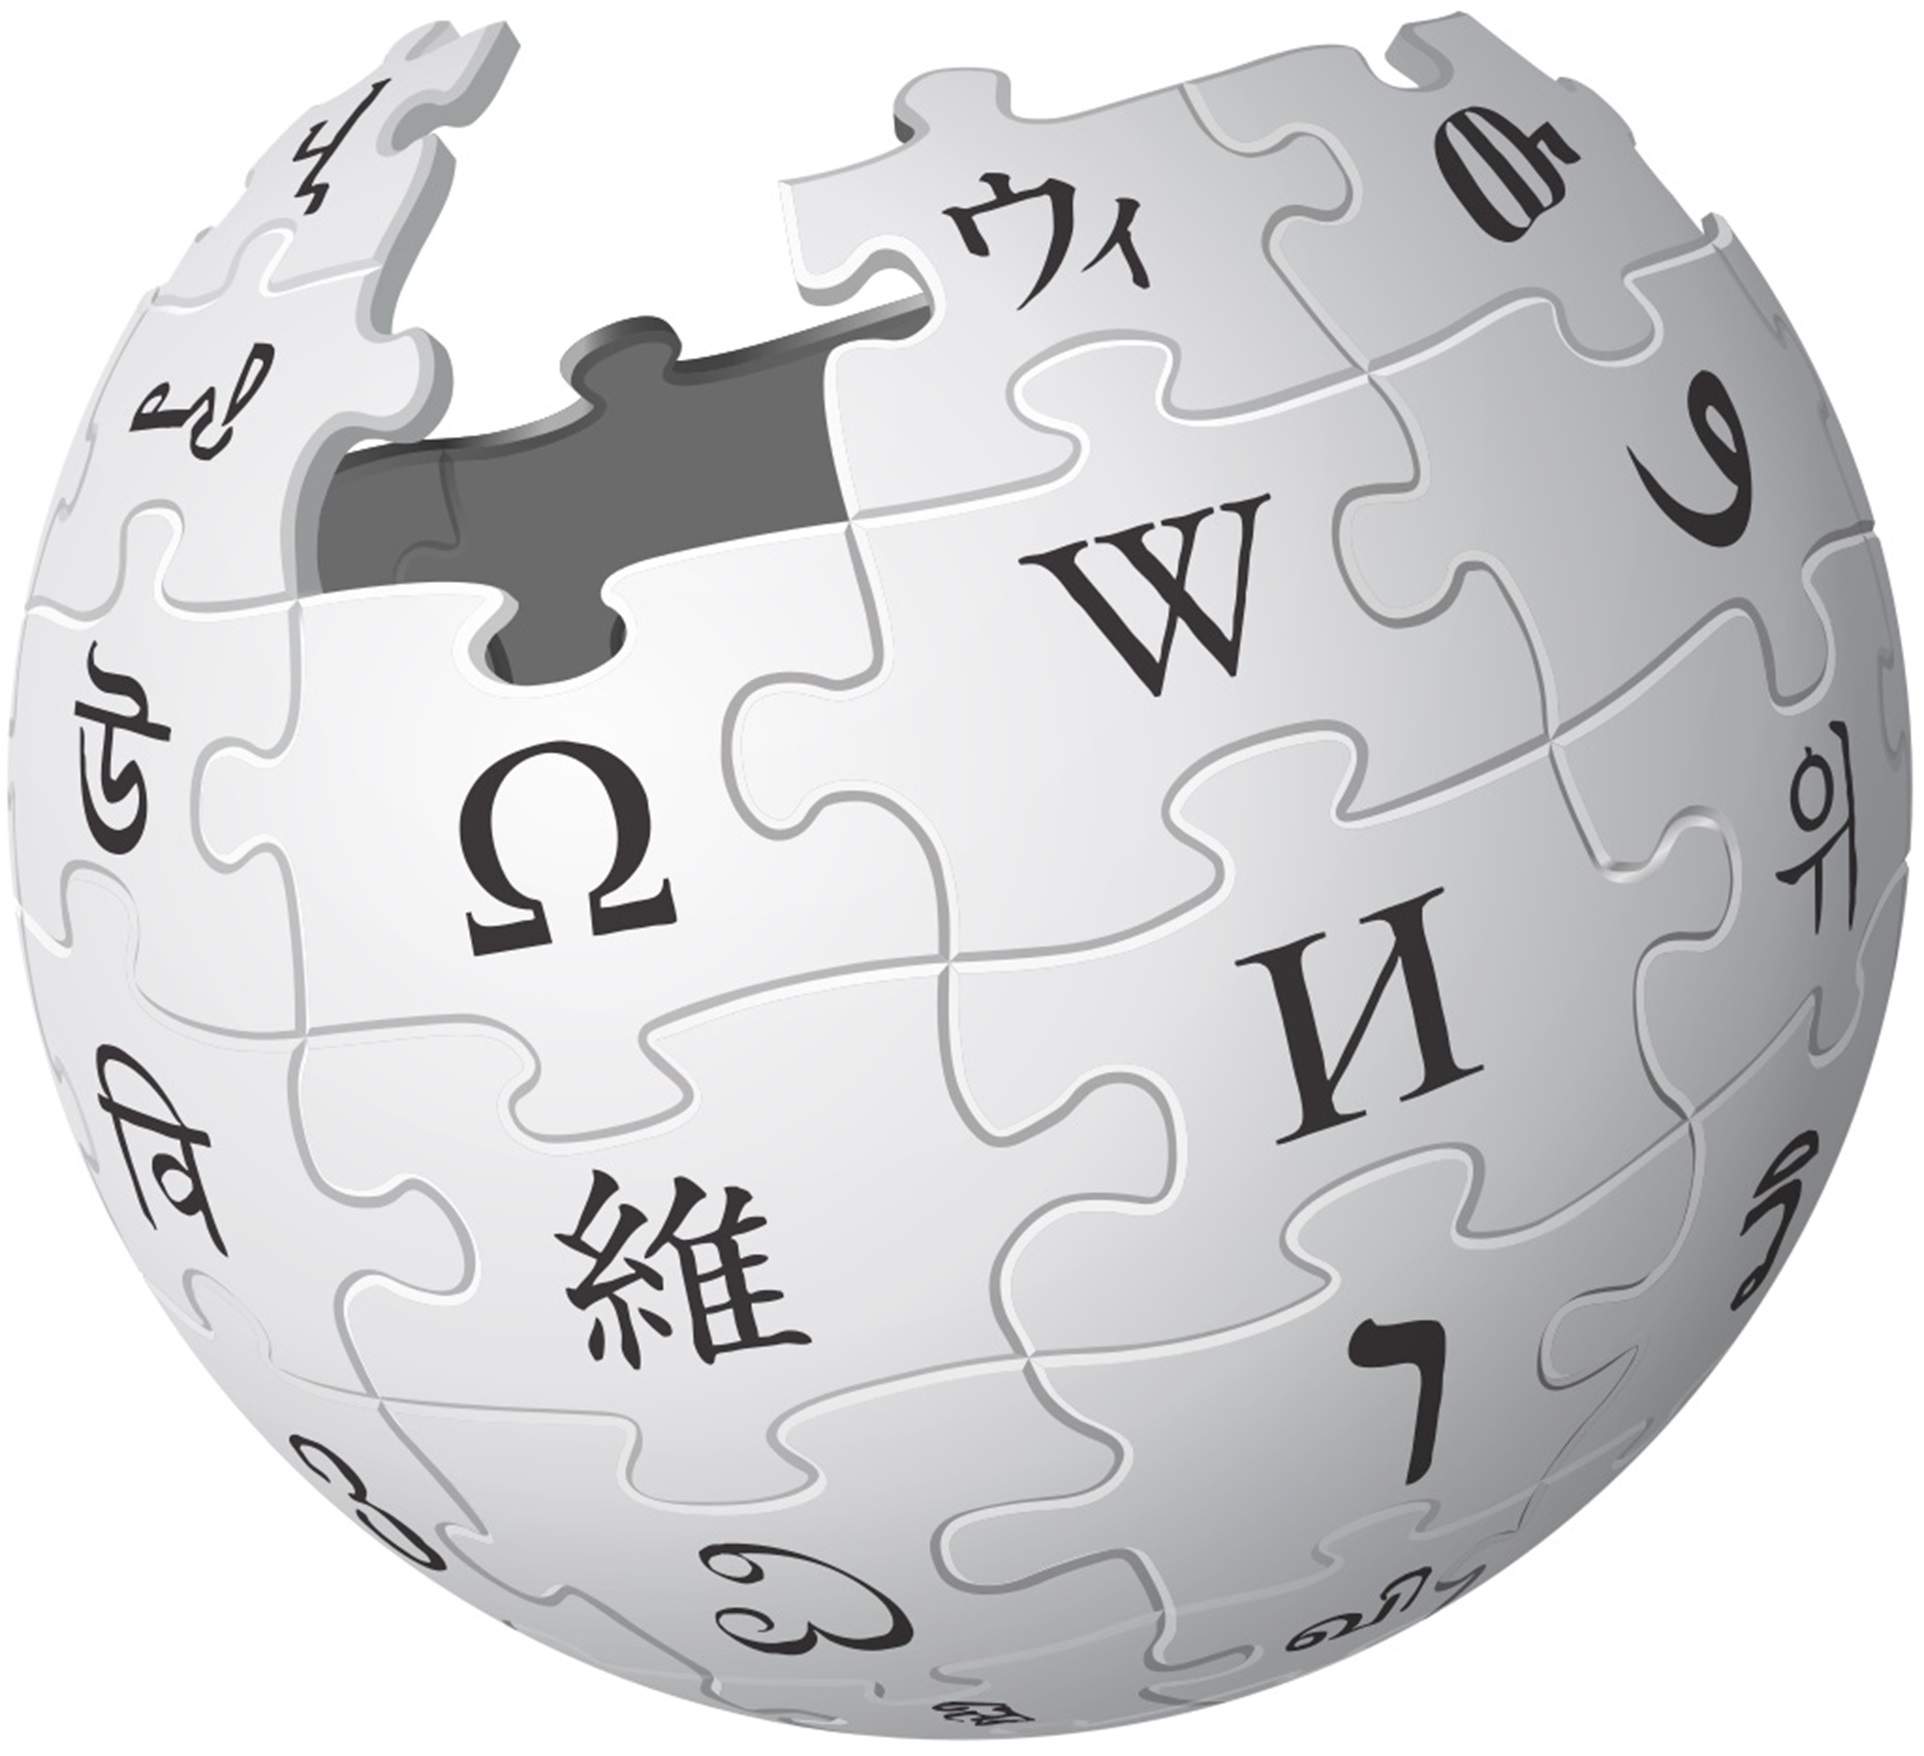 La Viquipèdia, en el top 5 del ranking de los 10.000 artículos que toda enciclopedia debería tener